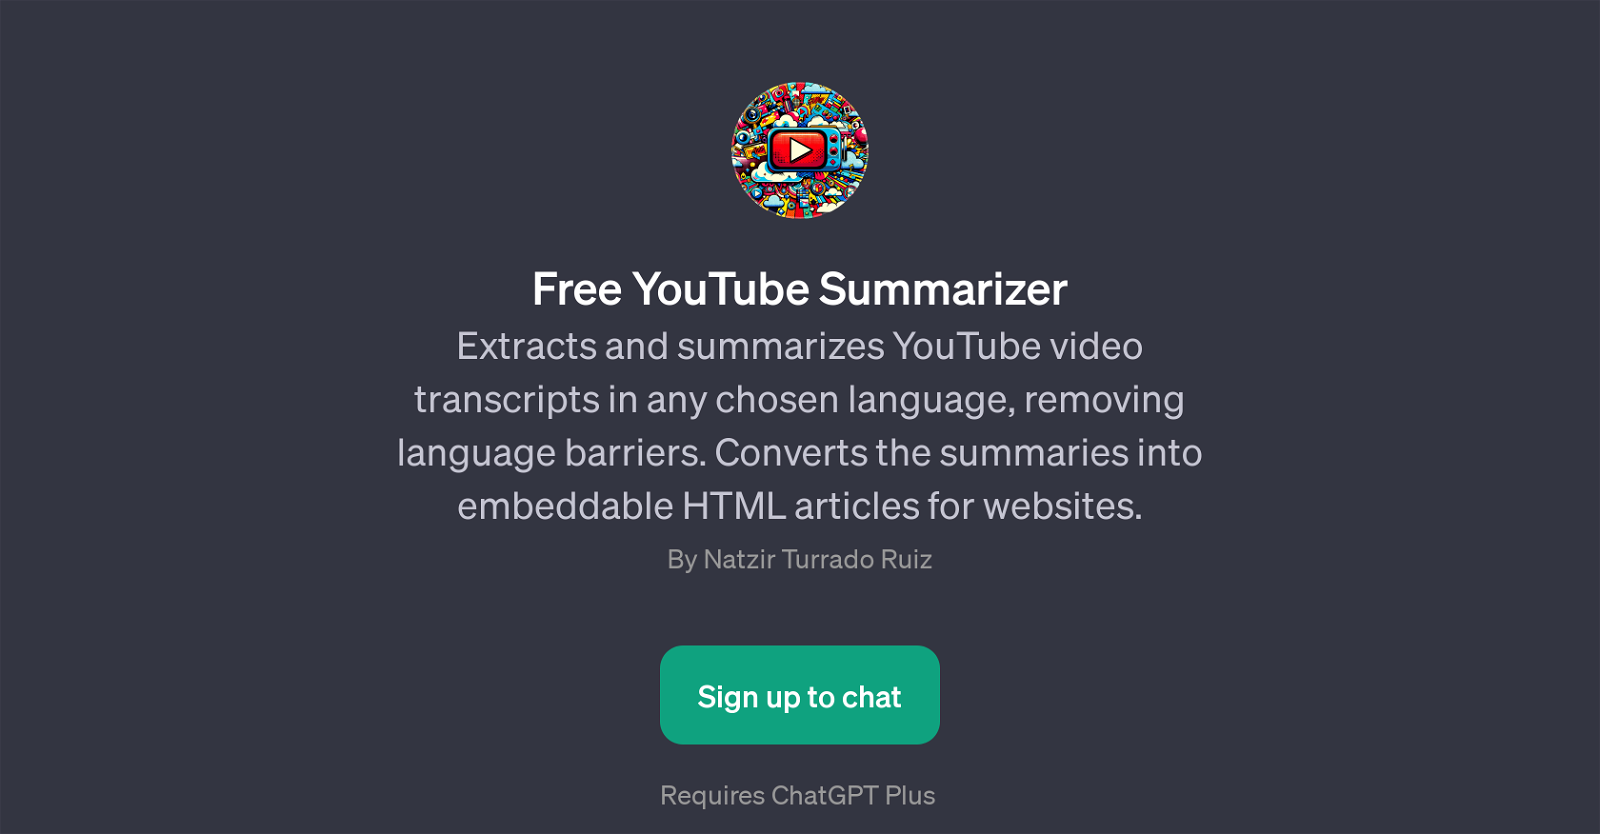 Free YouTube Summarizer website